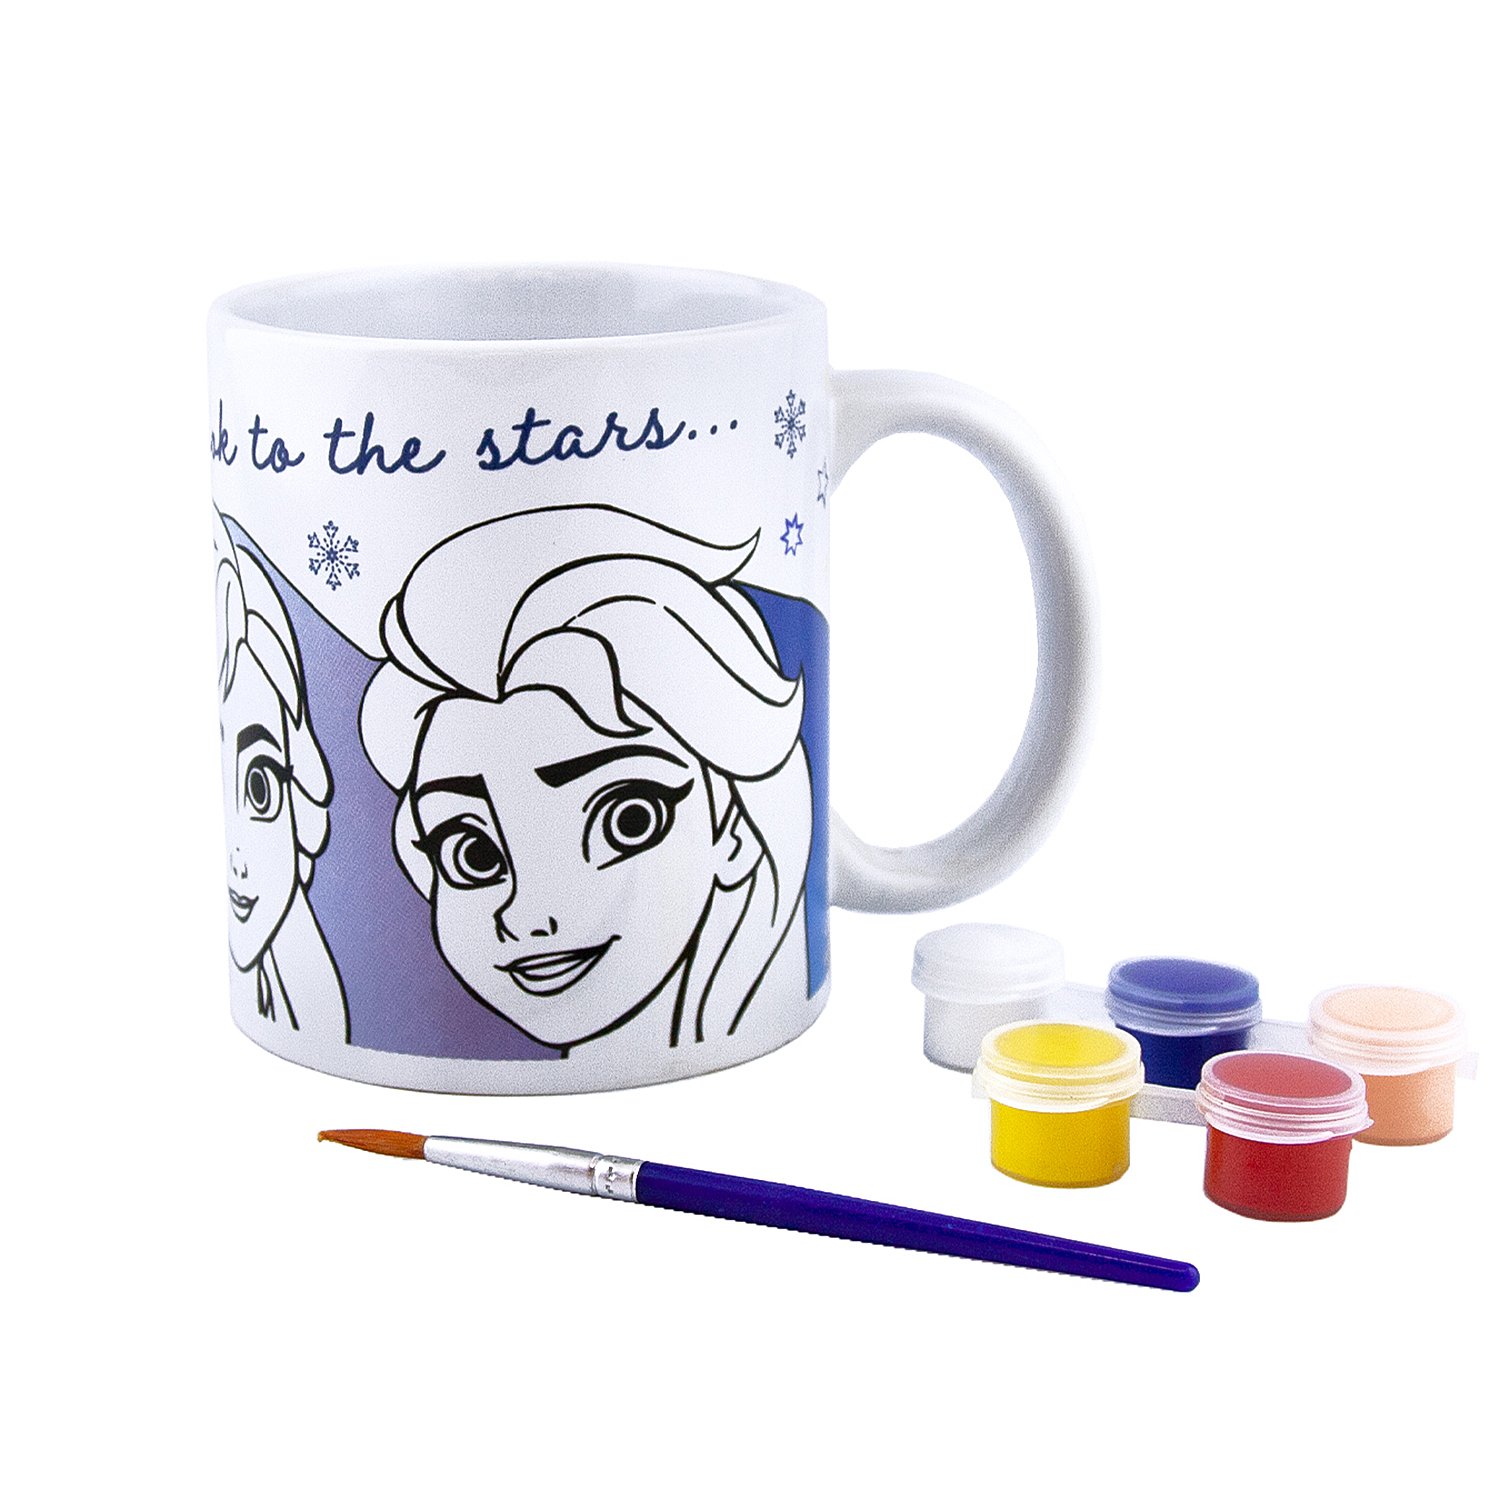 Cold heart consolation coloring mug